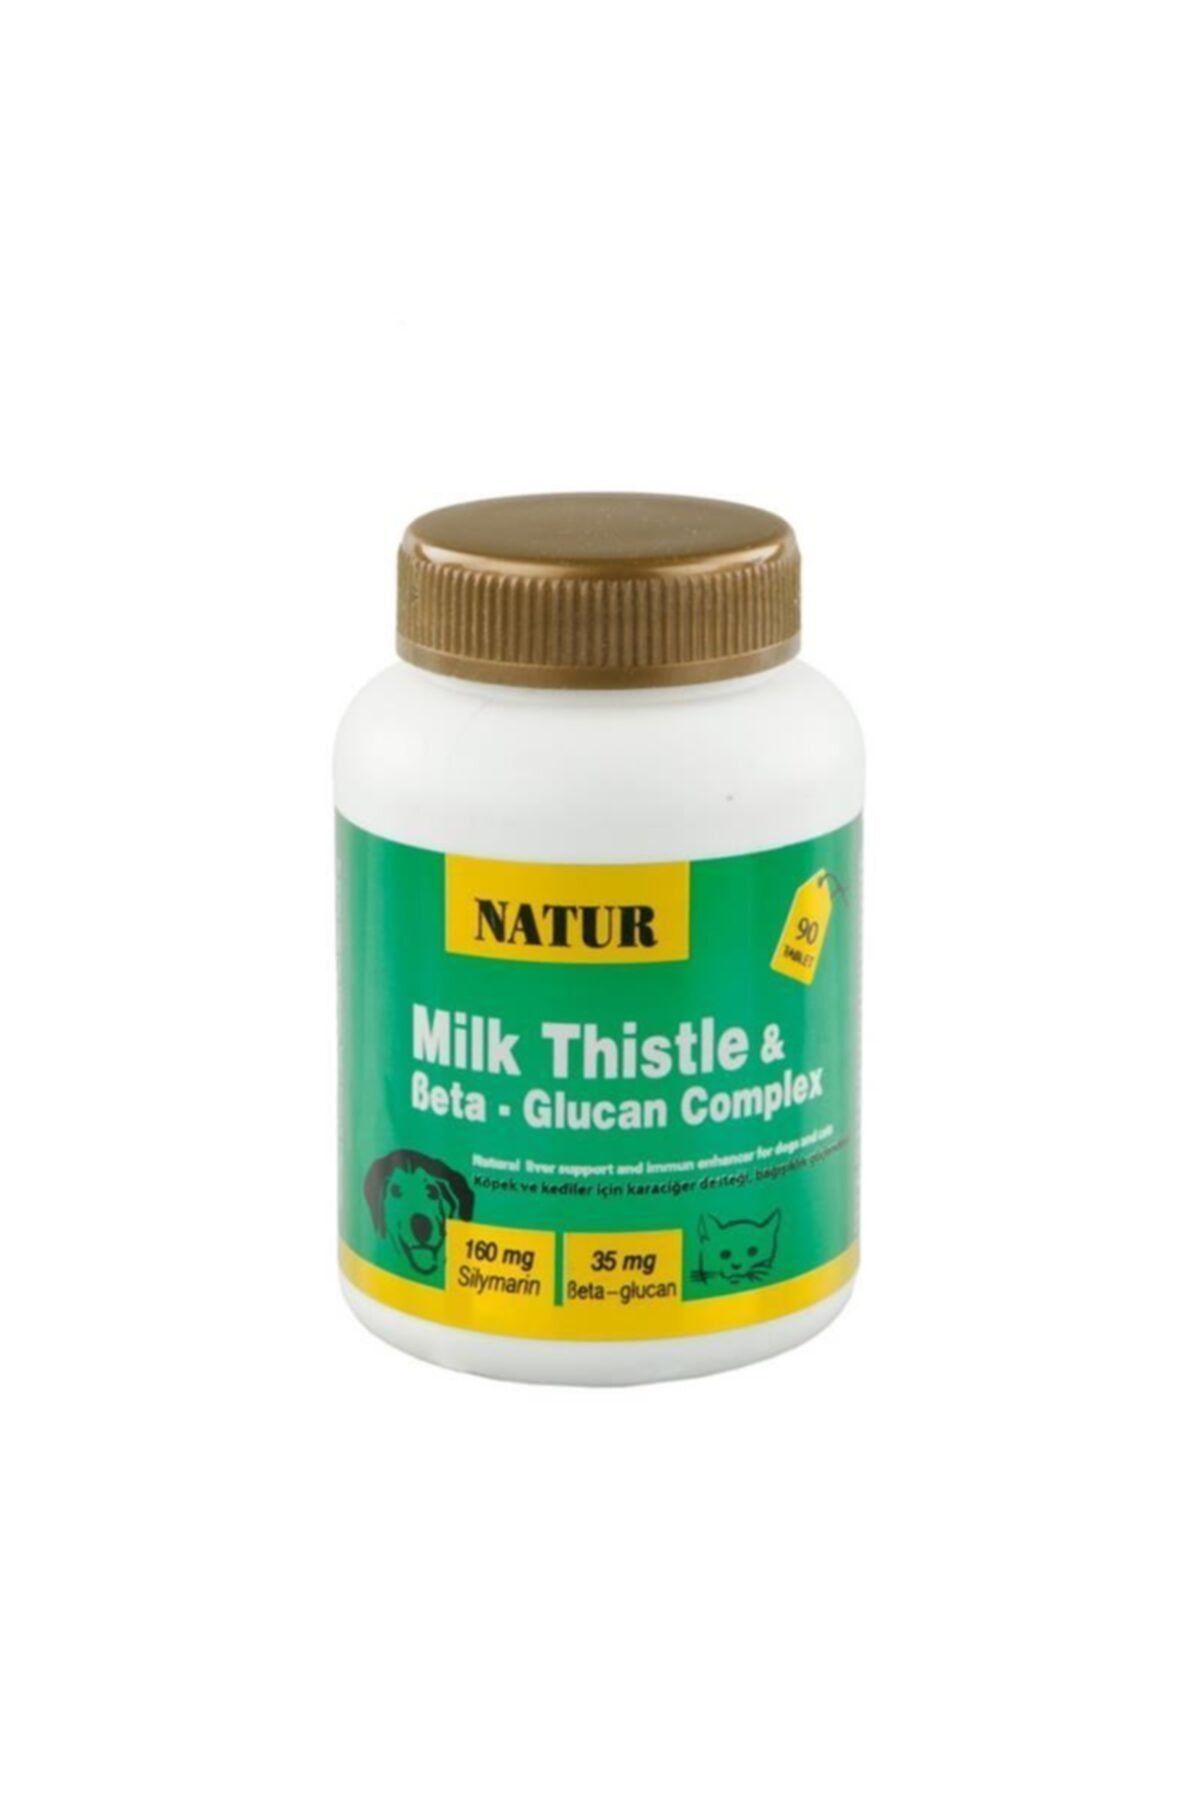 Genel Markalar Natur Milk Thistle & Beta - Glucan Complex Destekleyici 90 Tablet